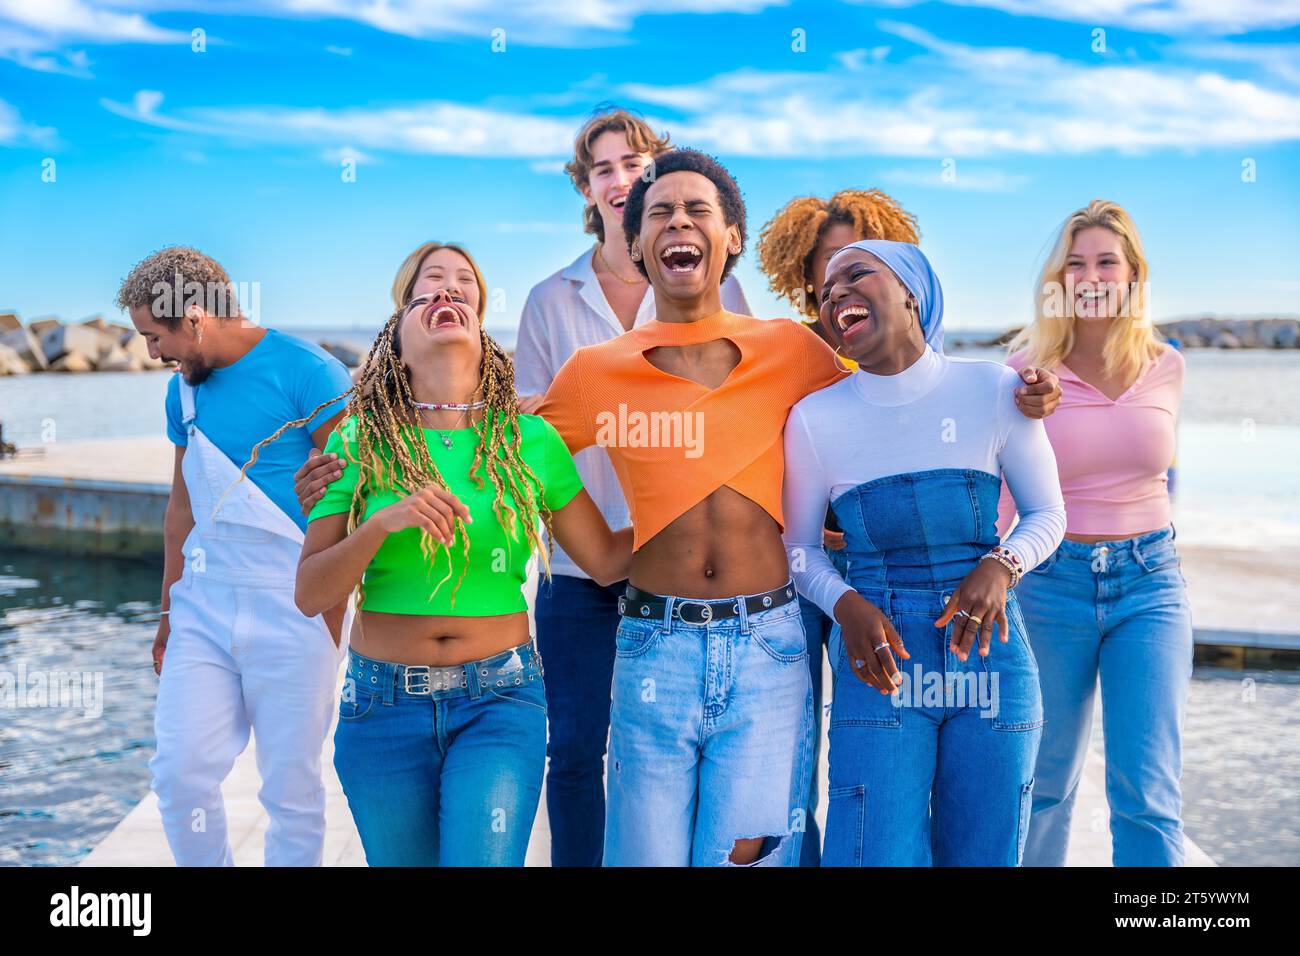 Frontalansicht von fröhlichen, multiethnischen Freunden, die Spaß beim gemeinsamen Spaziergang am Meer haben Stockfoto